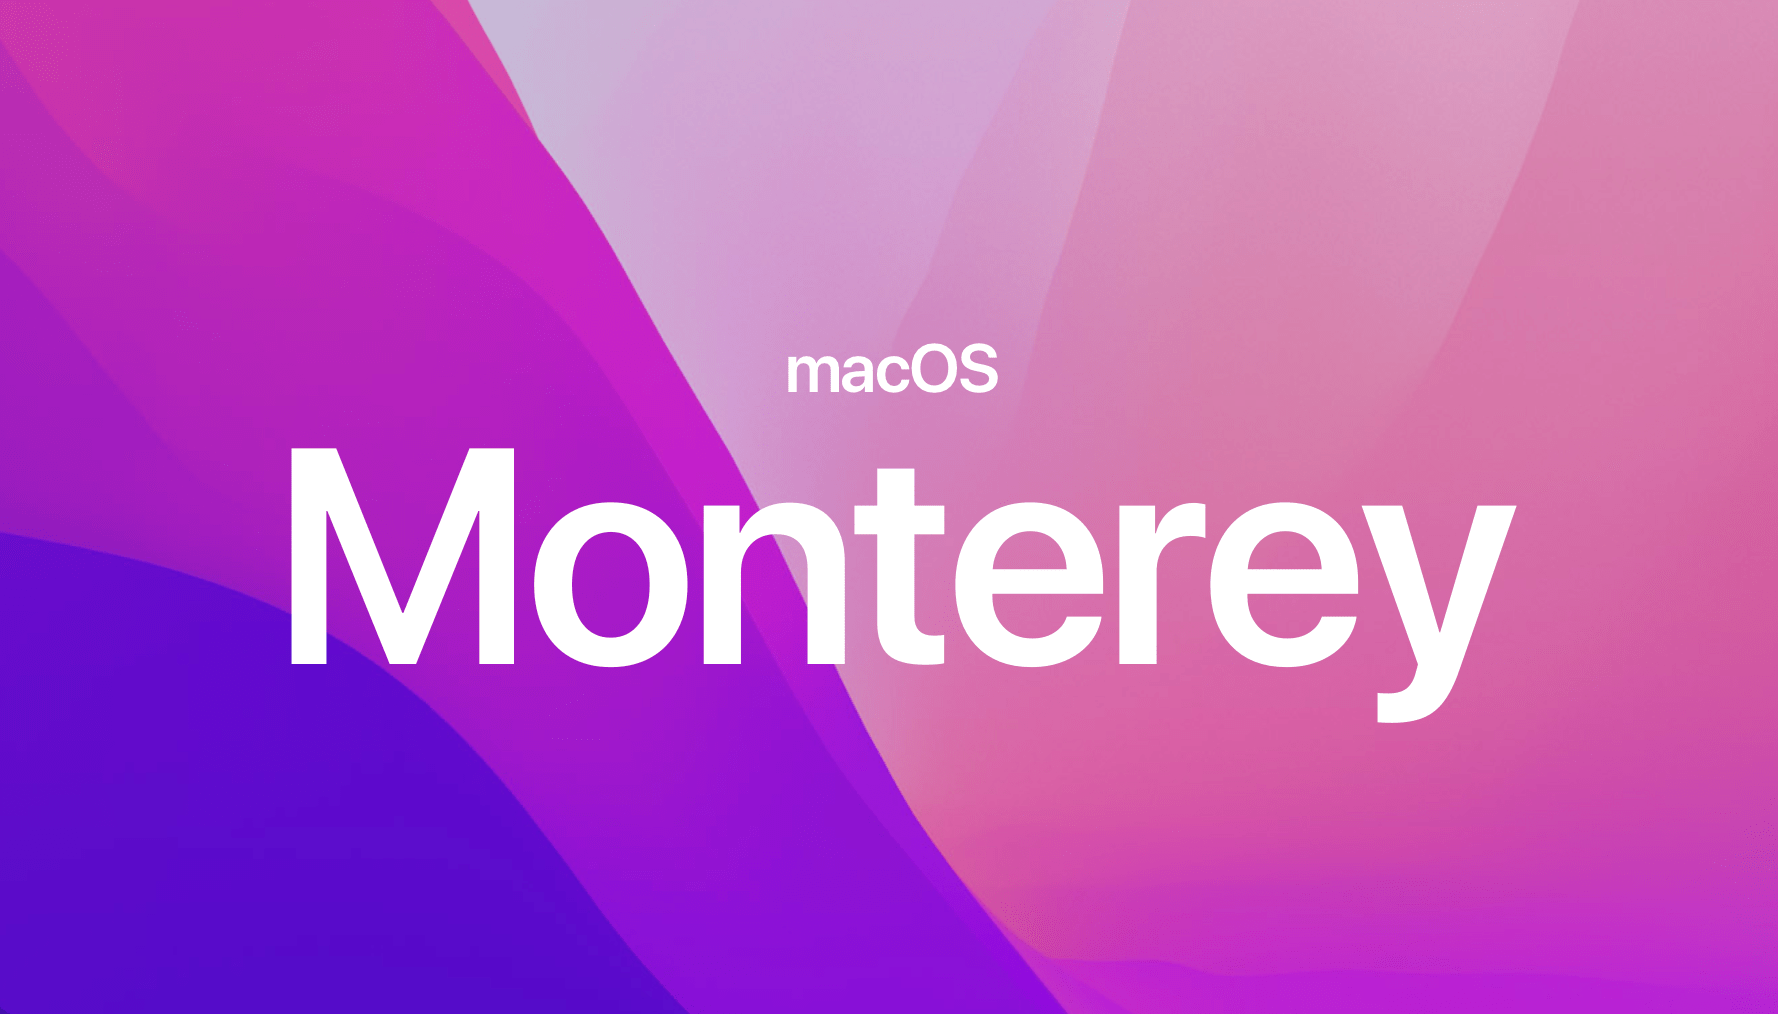 سیستم عامل macOS Monterey و لیست مک هایی که از آن پشتیبانی میکنند